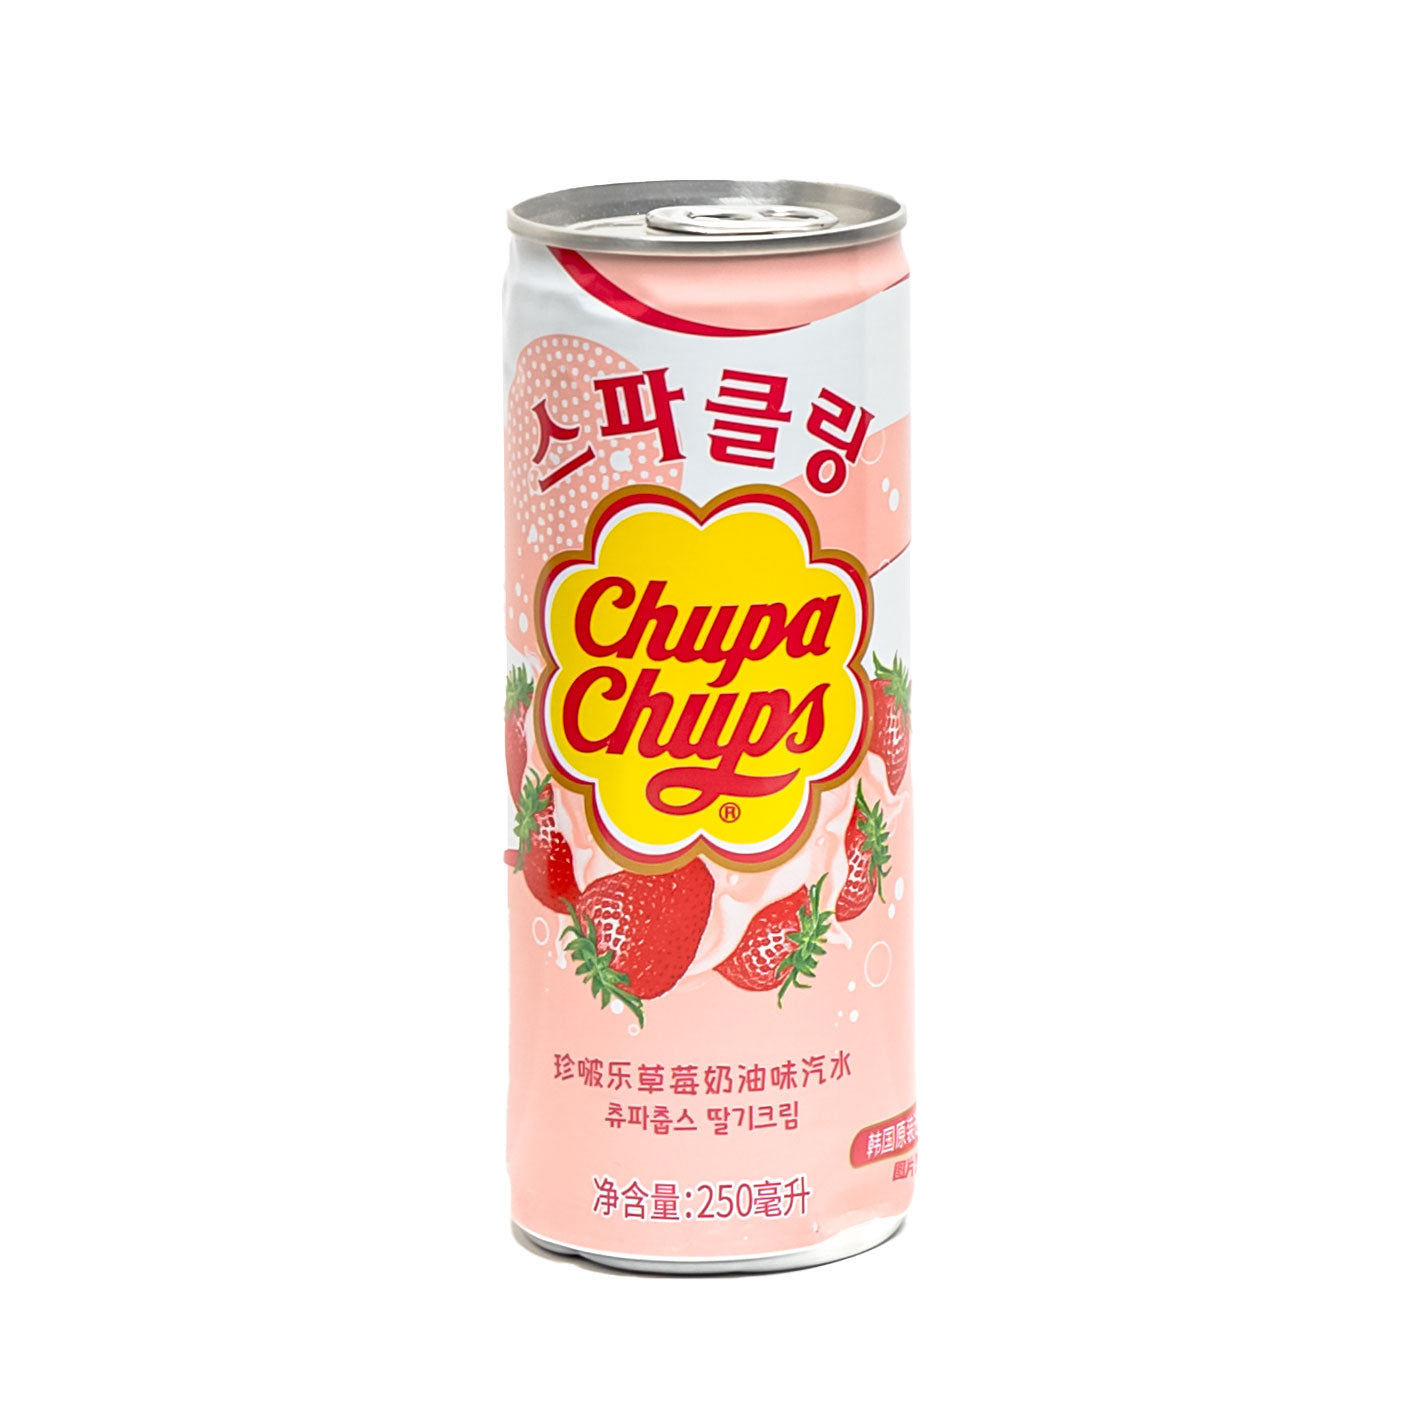 Chupa Chups Soda from Korea